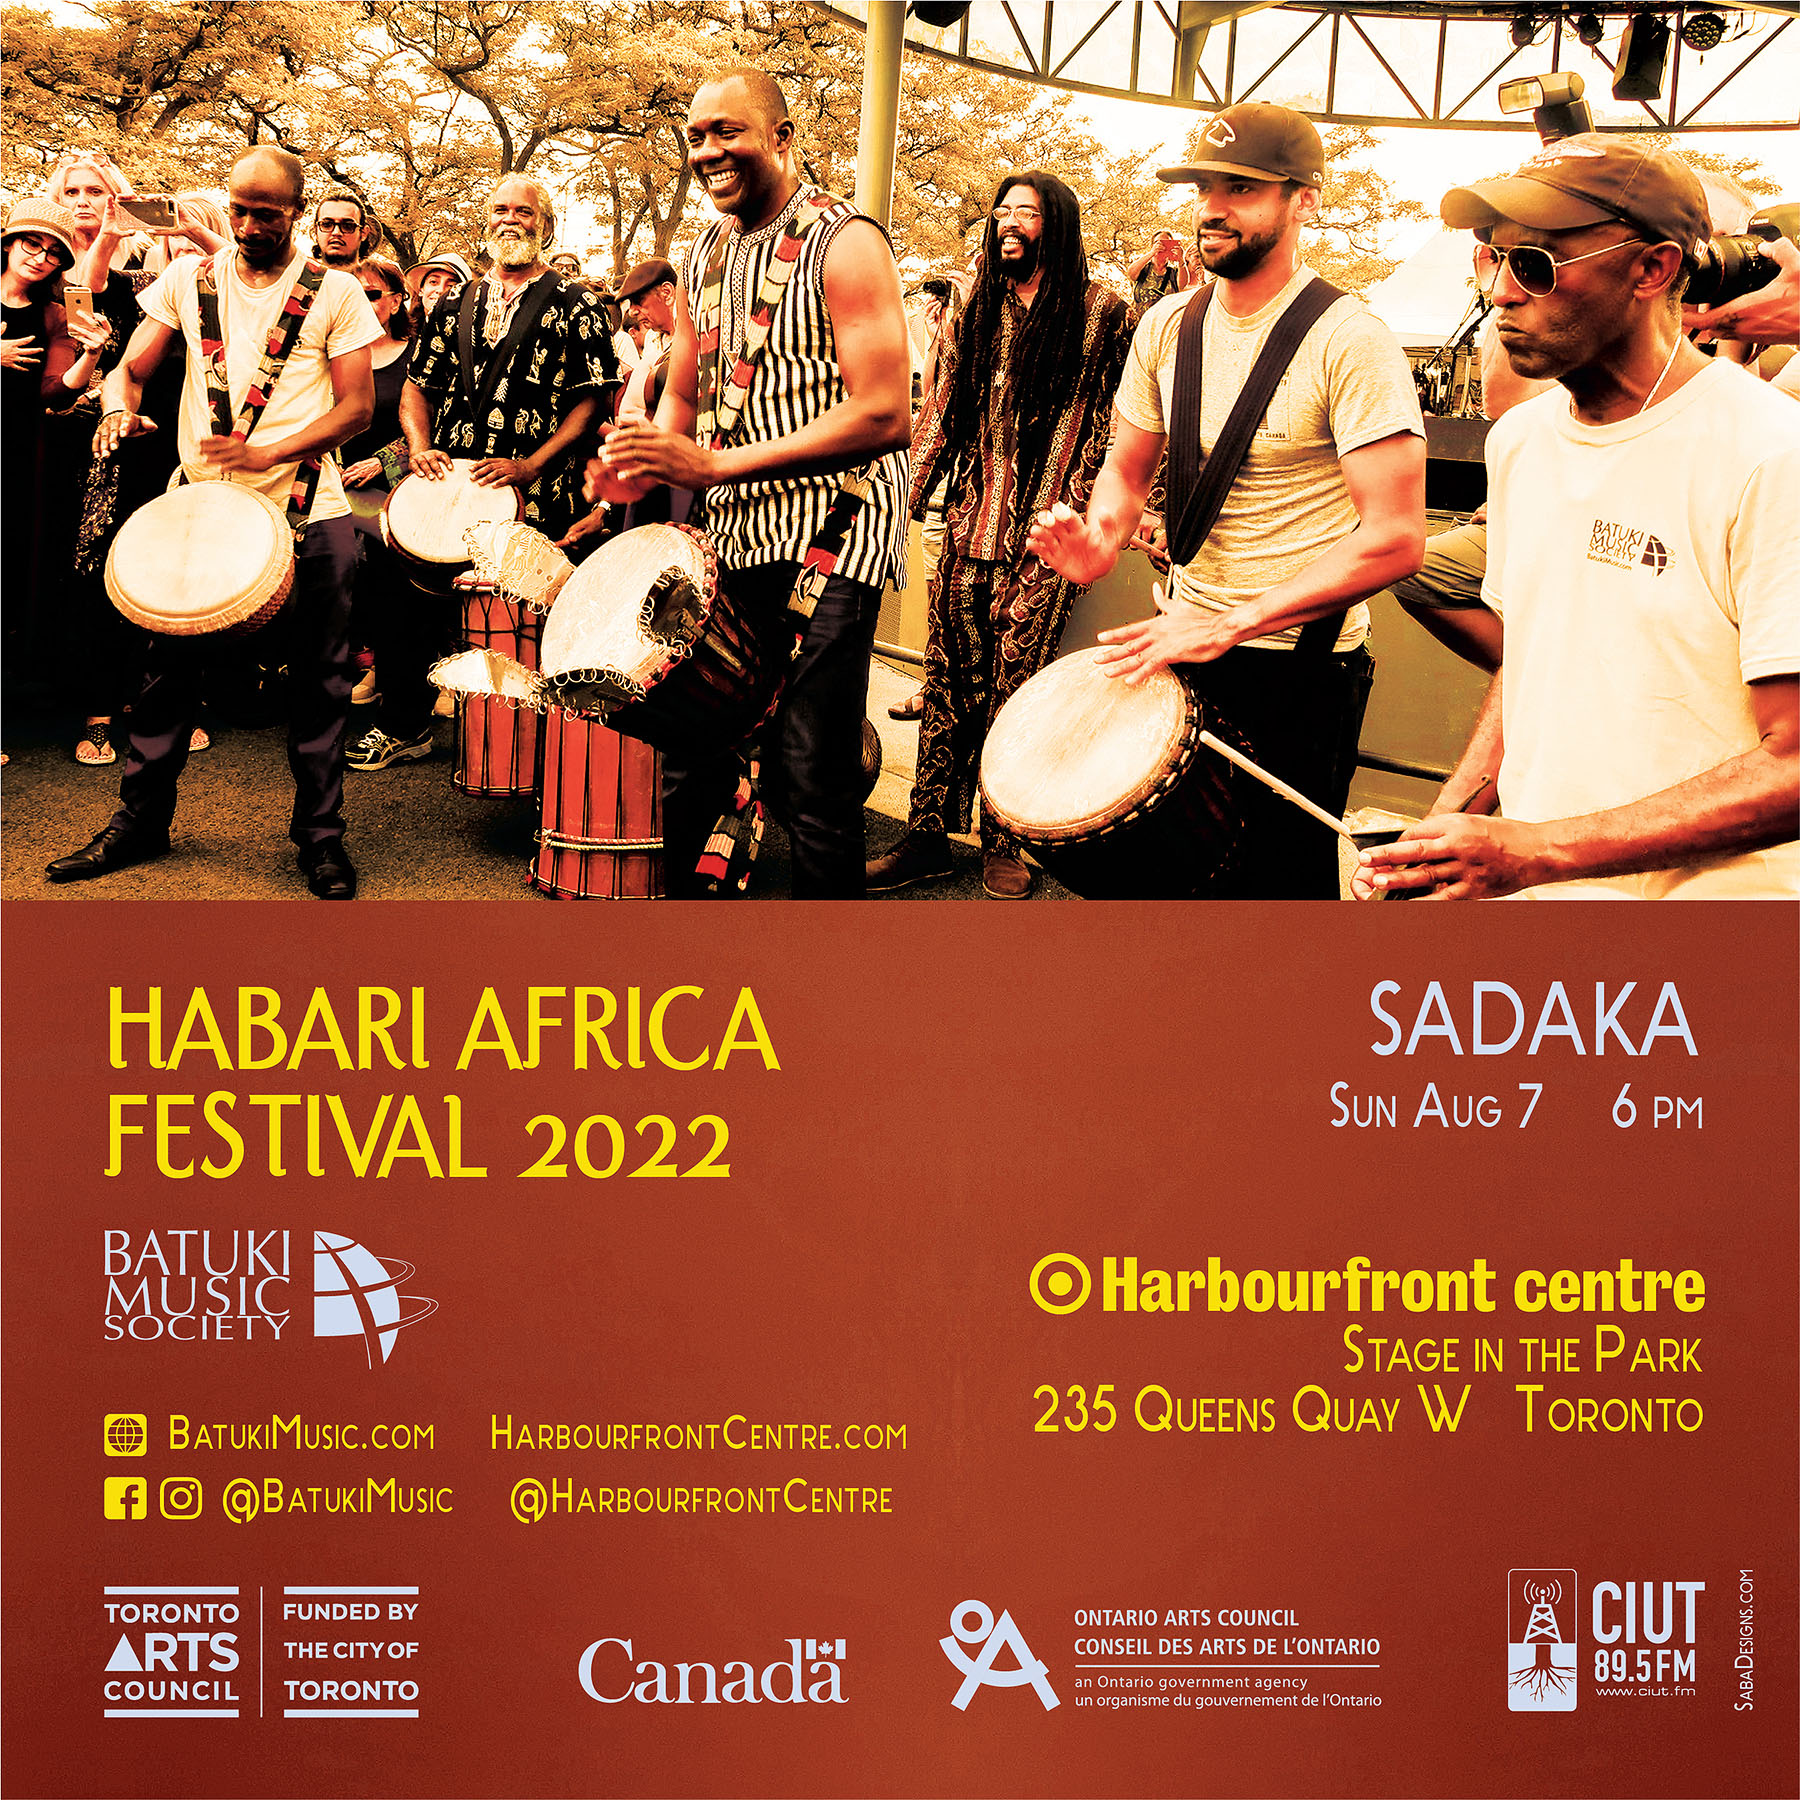 Habari Africa Live Festival 2022 by Batuki Music Society Sadaka